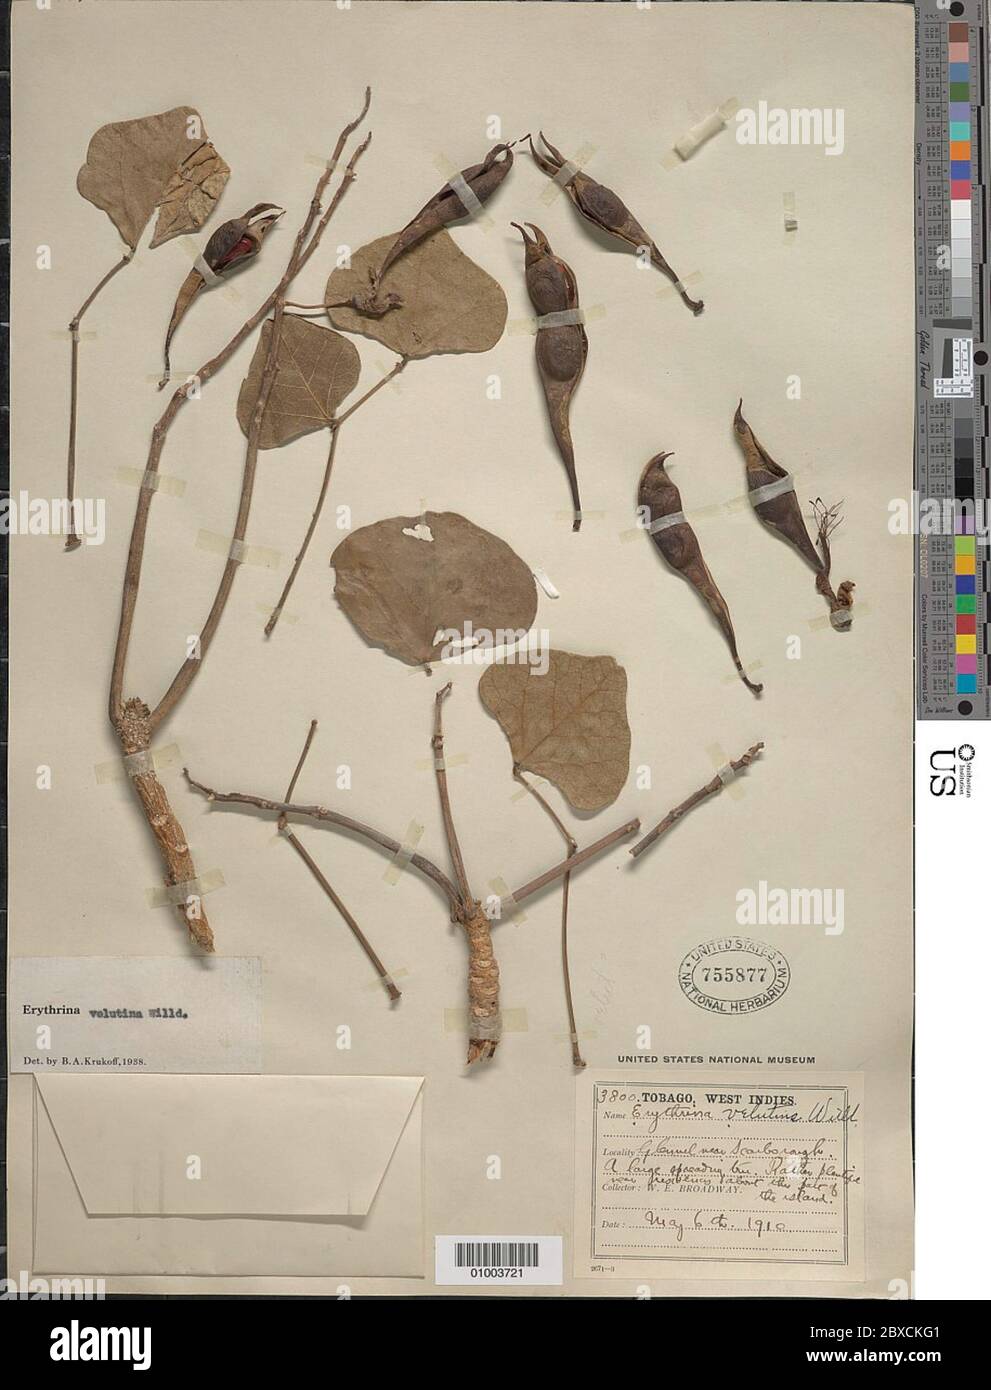 Erythrina velutina Willd Erythrina velutina Willd. Stock Photo